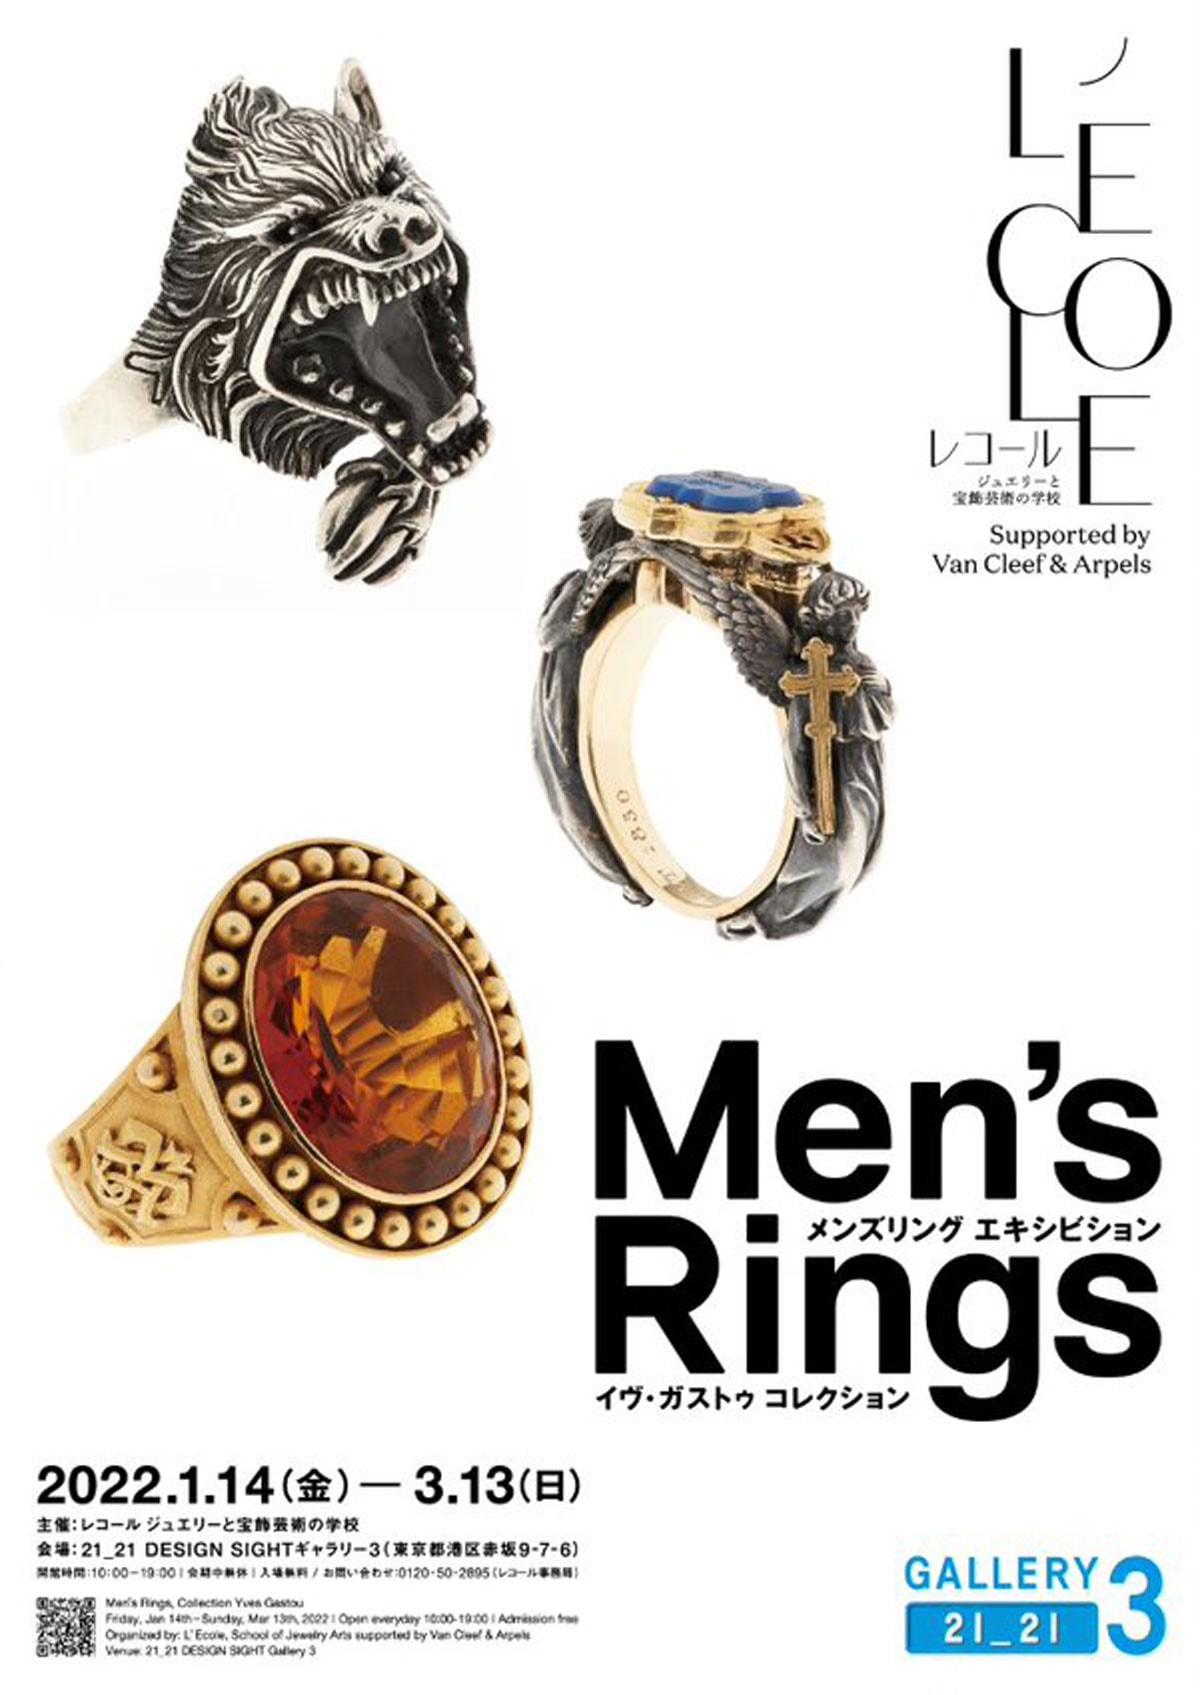 男性用指輪に見つけた、「身に着けるアート」の喜び メンズ リング イヴ・ガストゥ コレクション＠21_21 DESIGN SIGHTギャラリー3